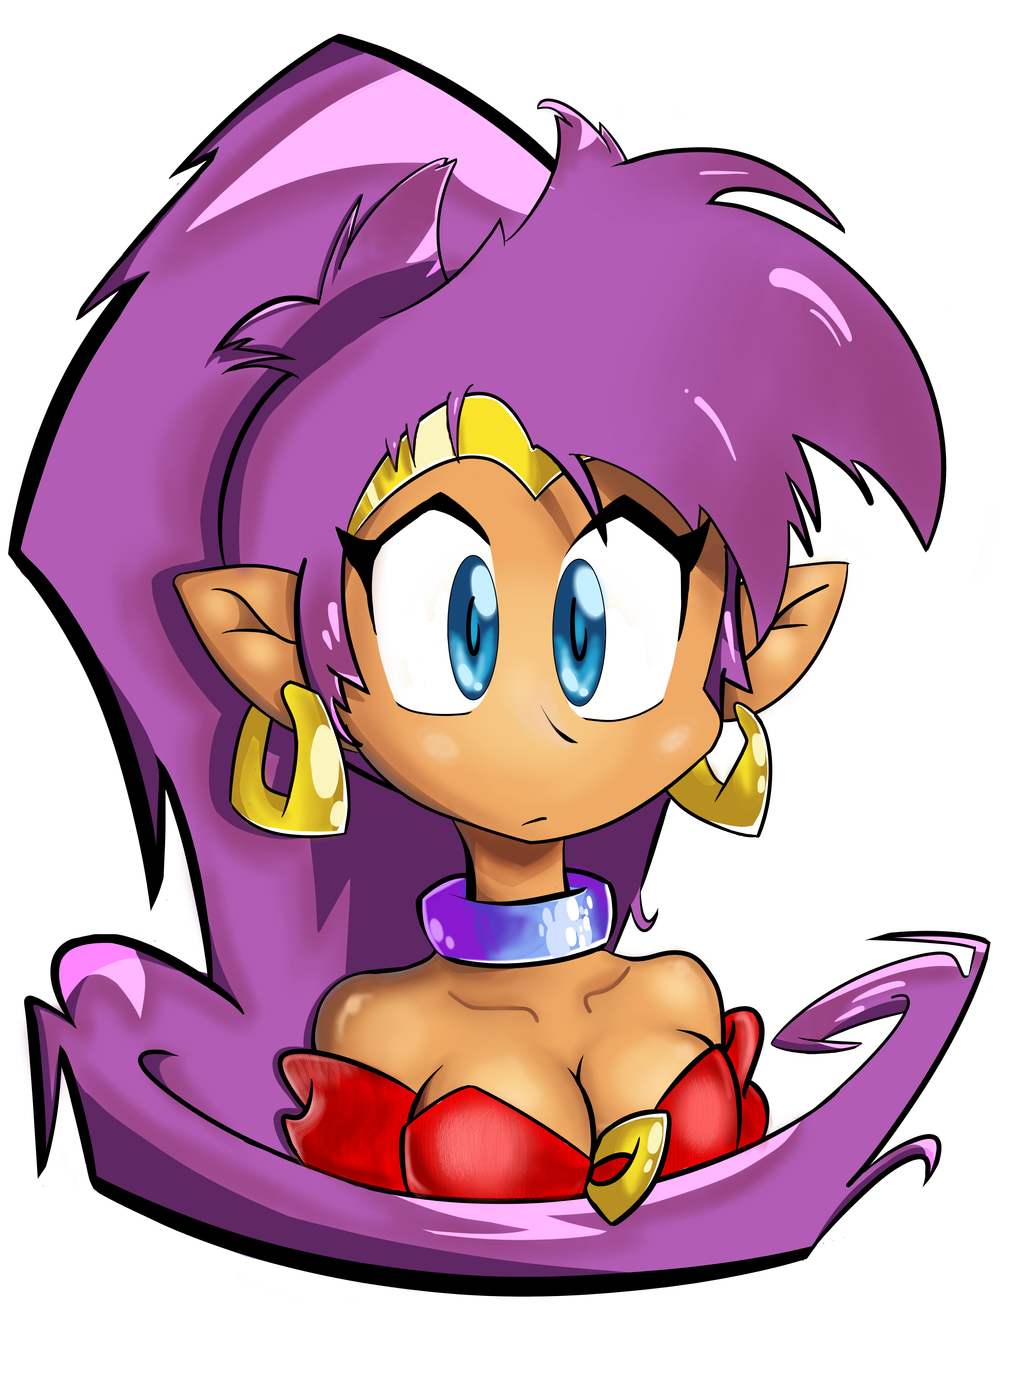 Shantae Fanart By JoJoJoKoJoNo On DeviantArt.